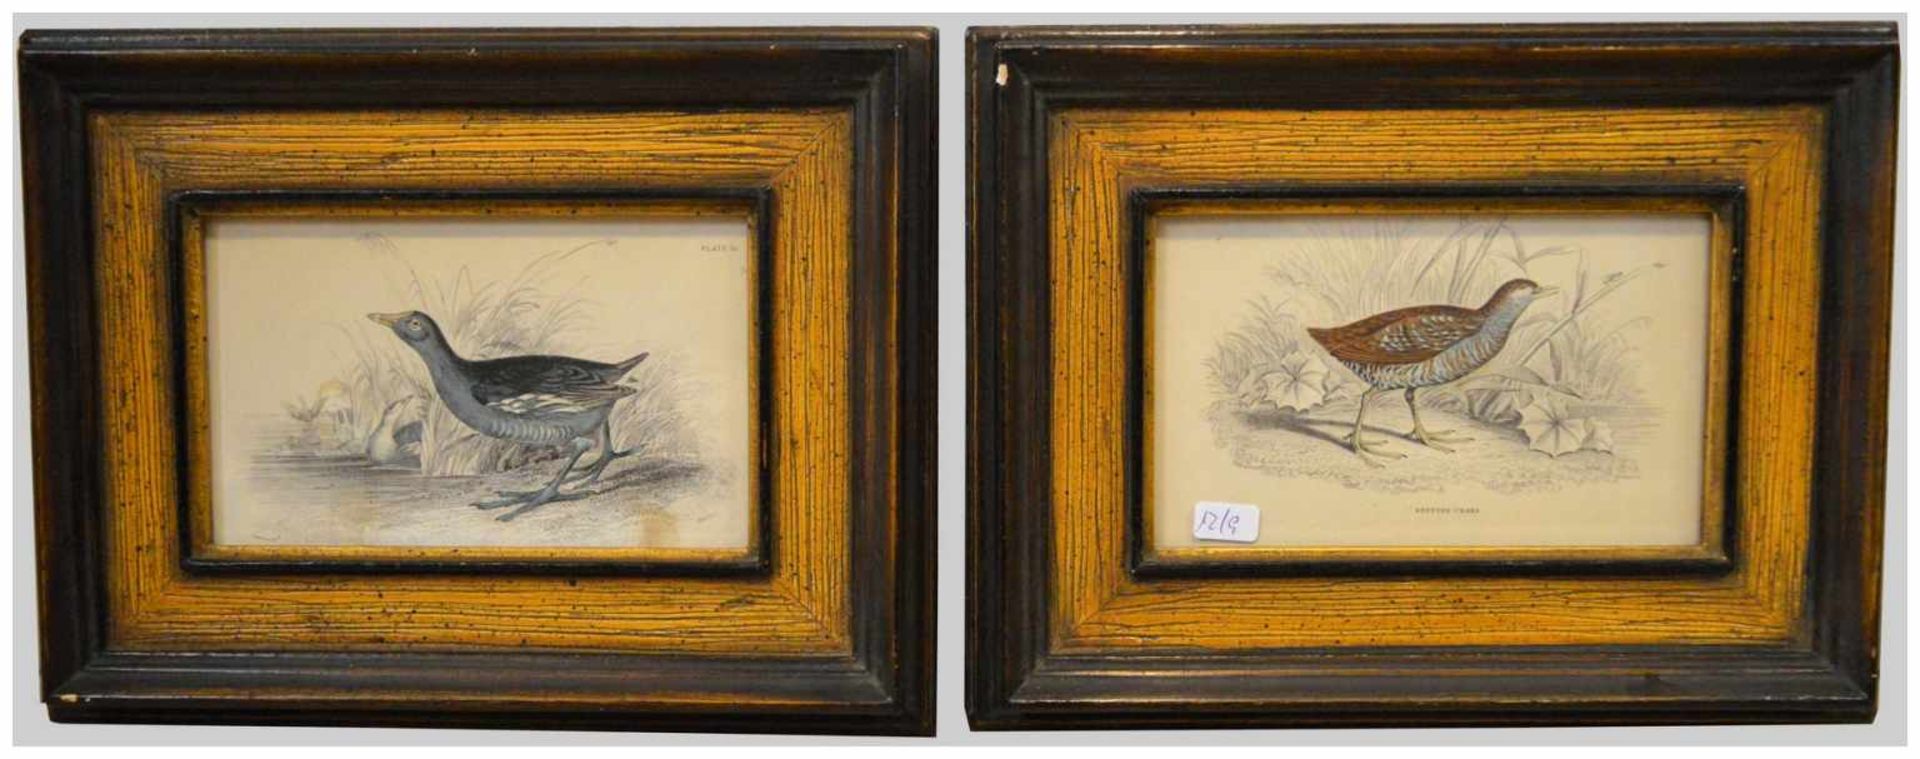 Zwei Holzschnitte Wasservögel, coloriert, im Rahmen, 19 X 25 cm, um 1900